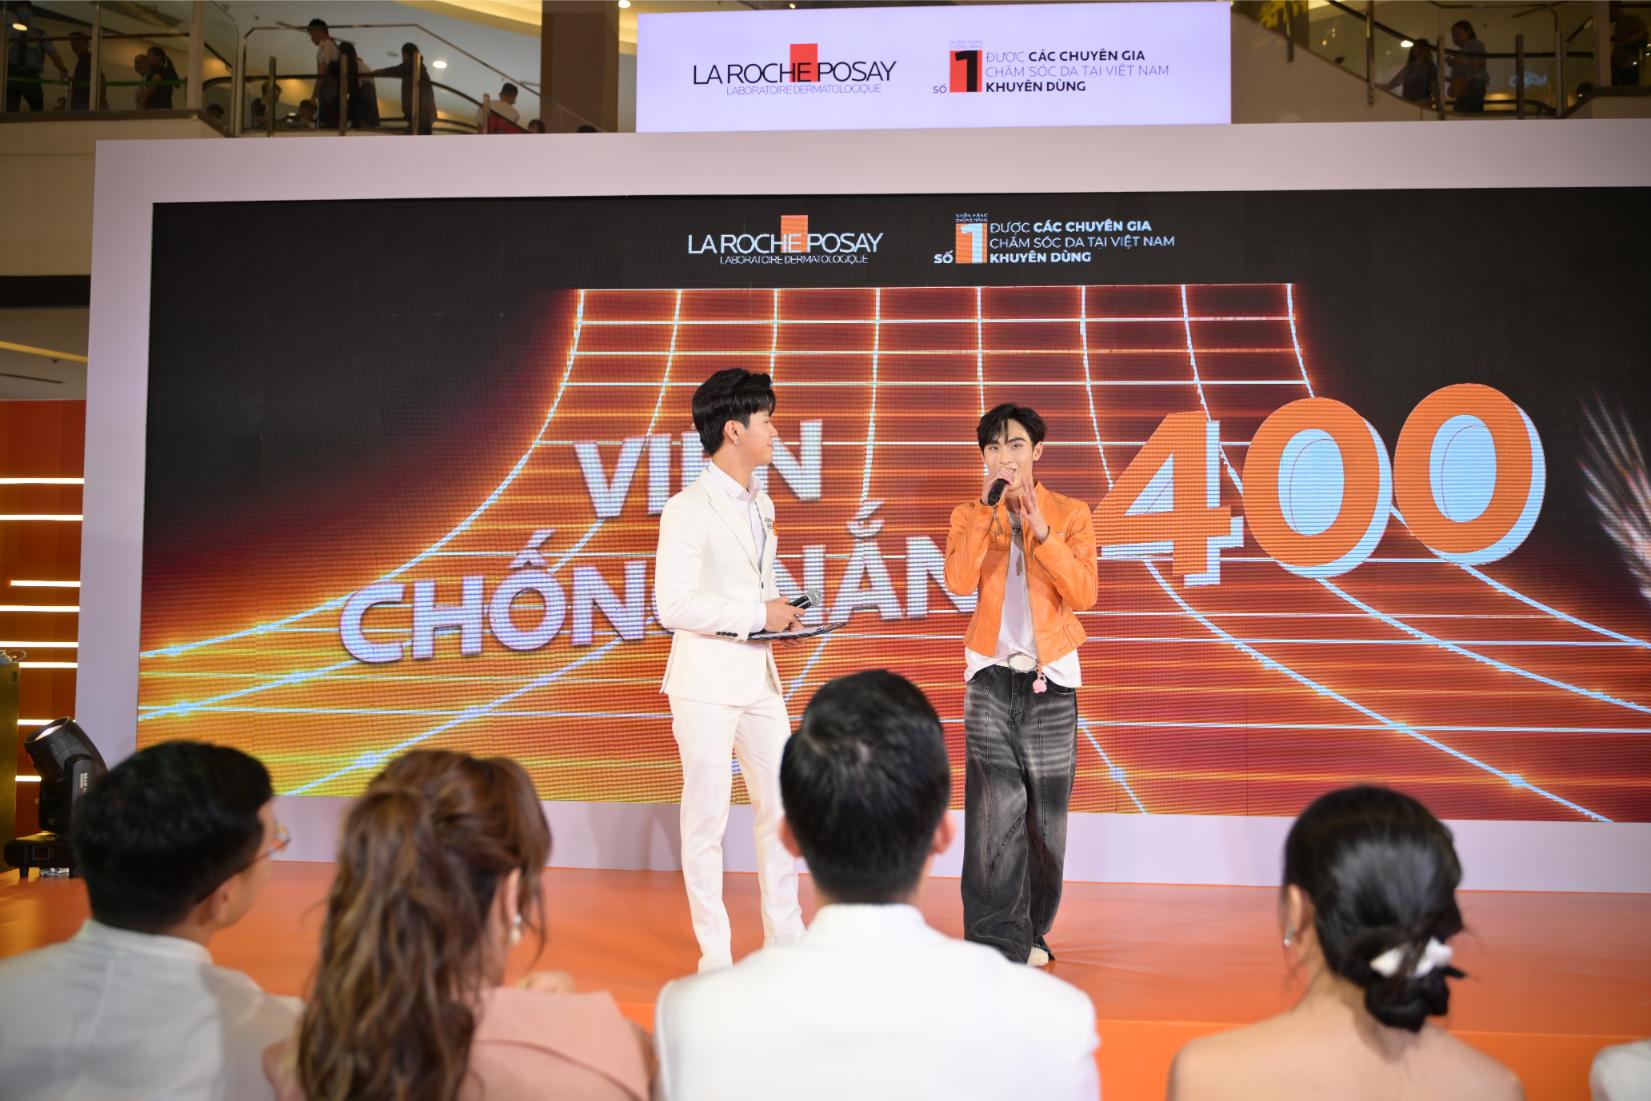 Viện chống nắng 400 1 La Roche Posay triển lãm Công nghệ UV Light đa giác quan tại Aeon Mall Celadon Tân Phú